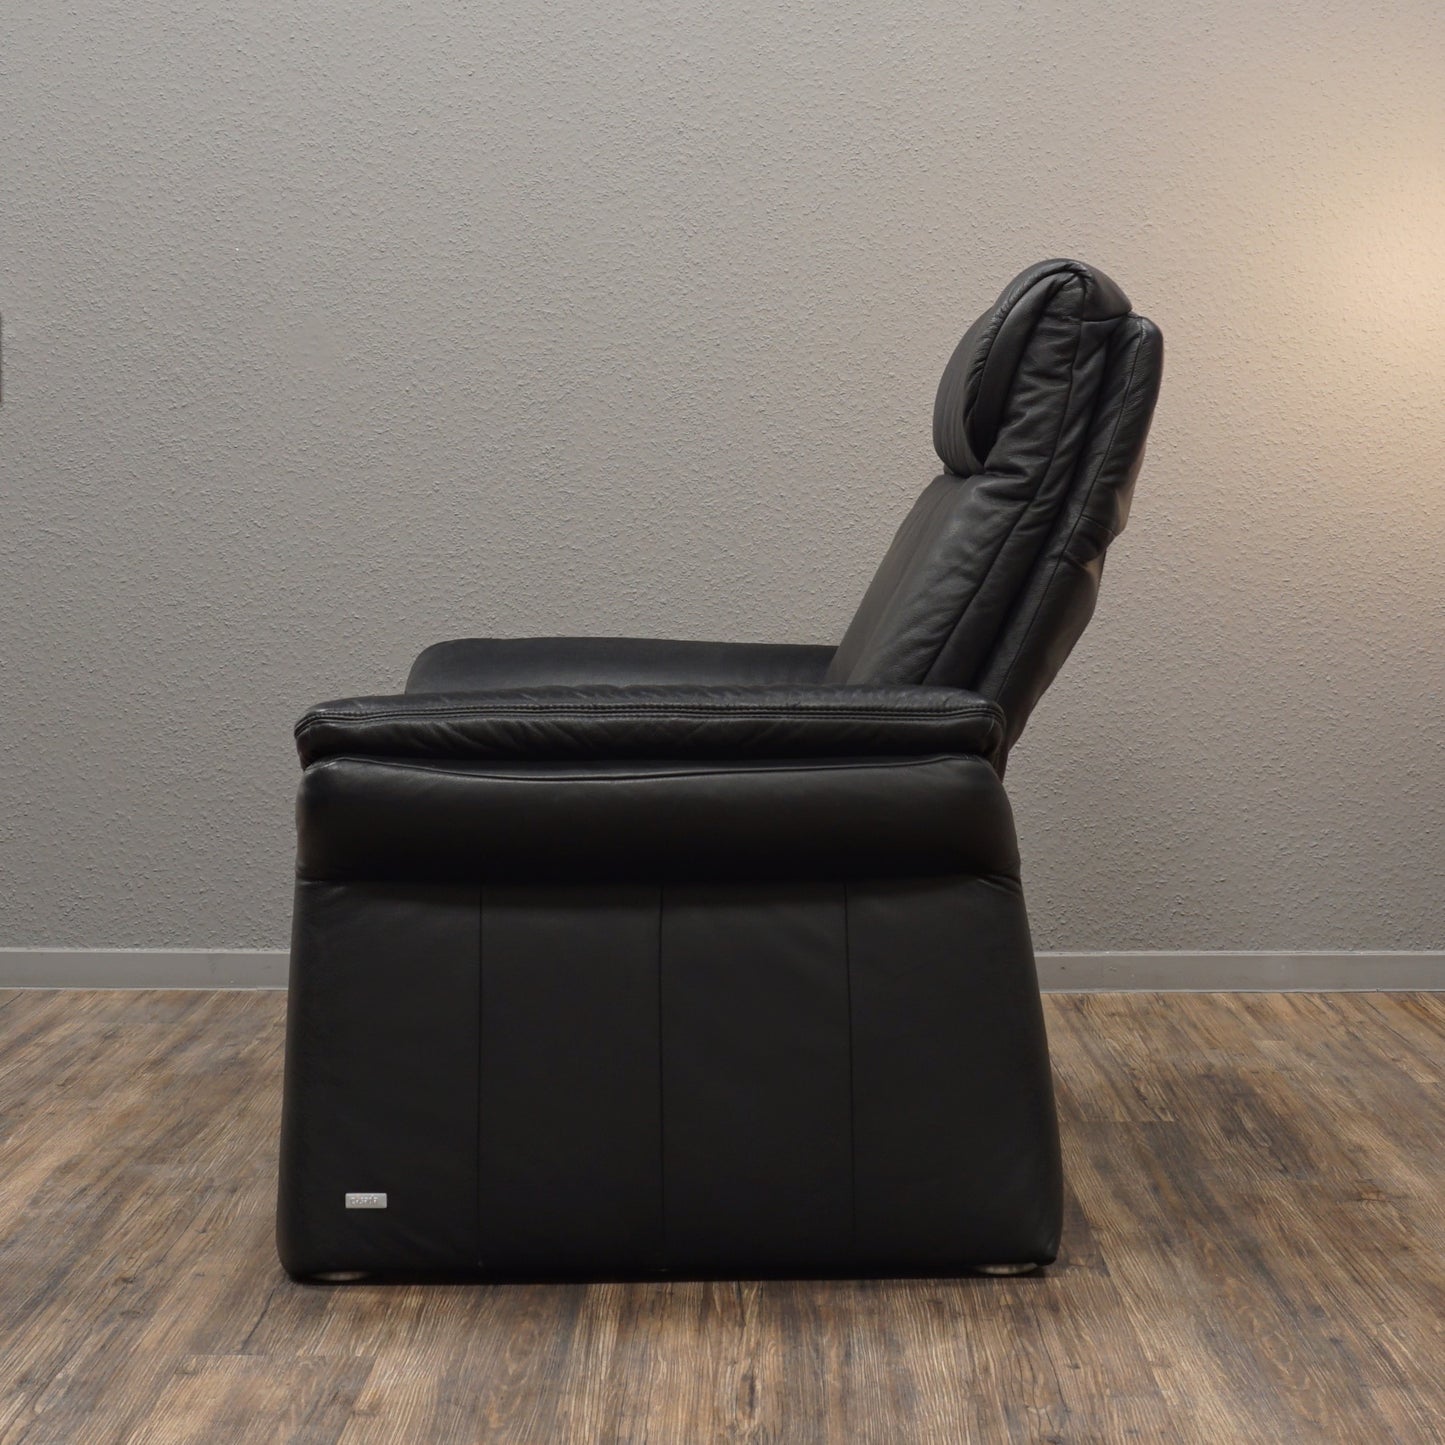 CASDADA | XXL Leder Sessel Schwarz mit Funktion | Eleganter Design Lounge Chair